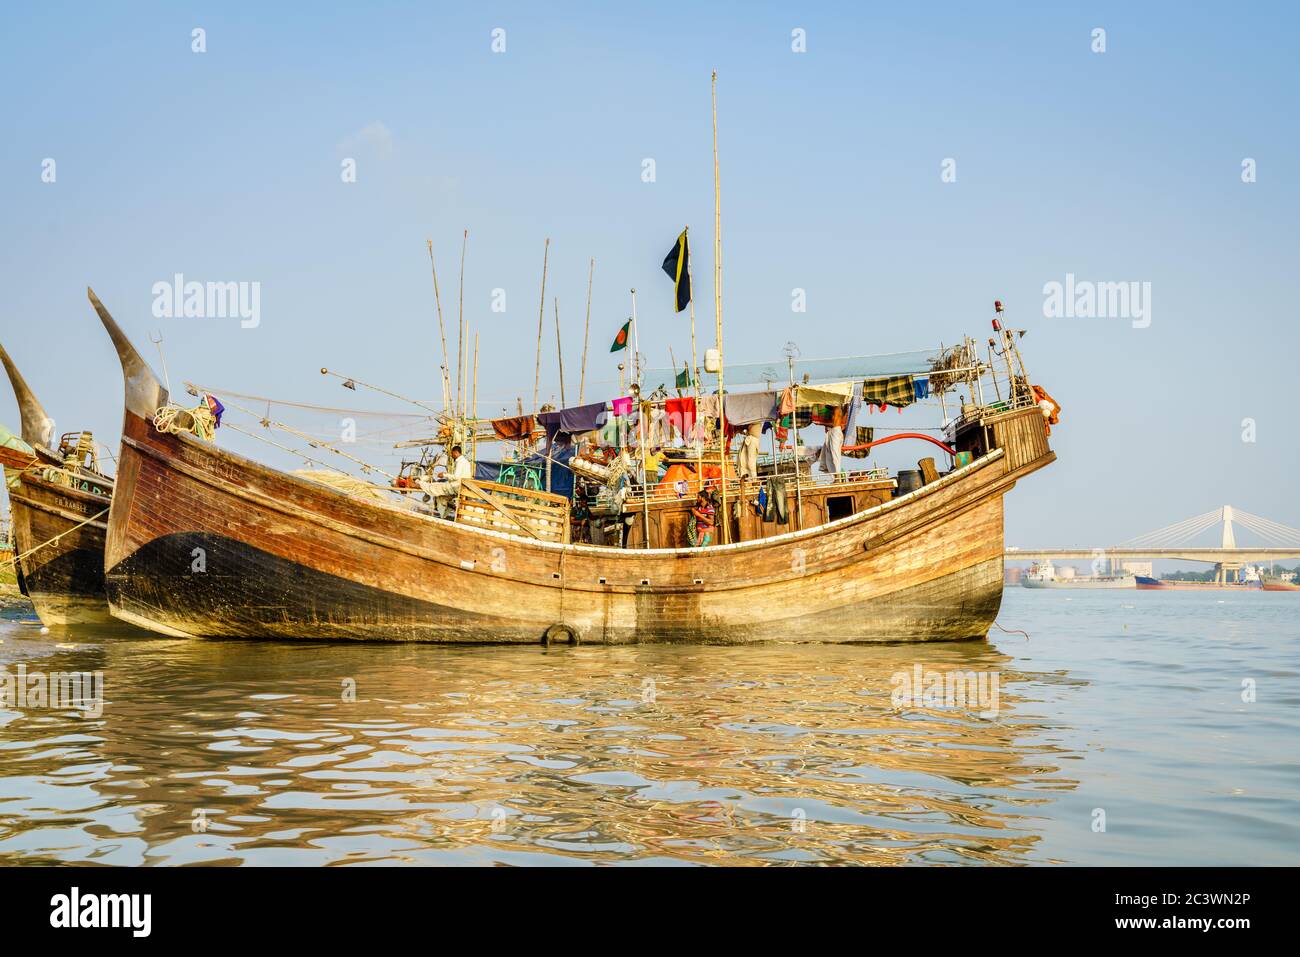 Chittagong, Bangladesh, December 22, 2017: Traditional fishing boat at Karnaphuli River port in Chittagong, Bangladesh Stock Photo